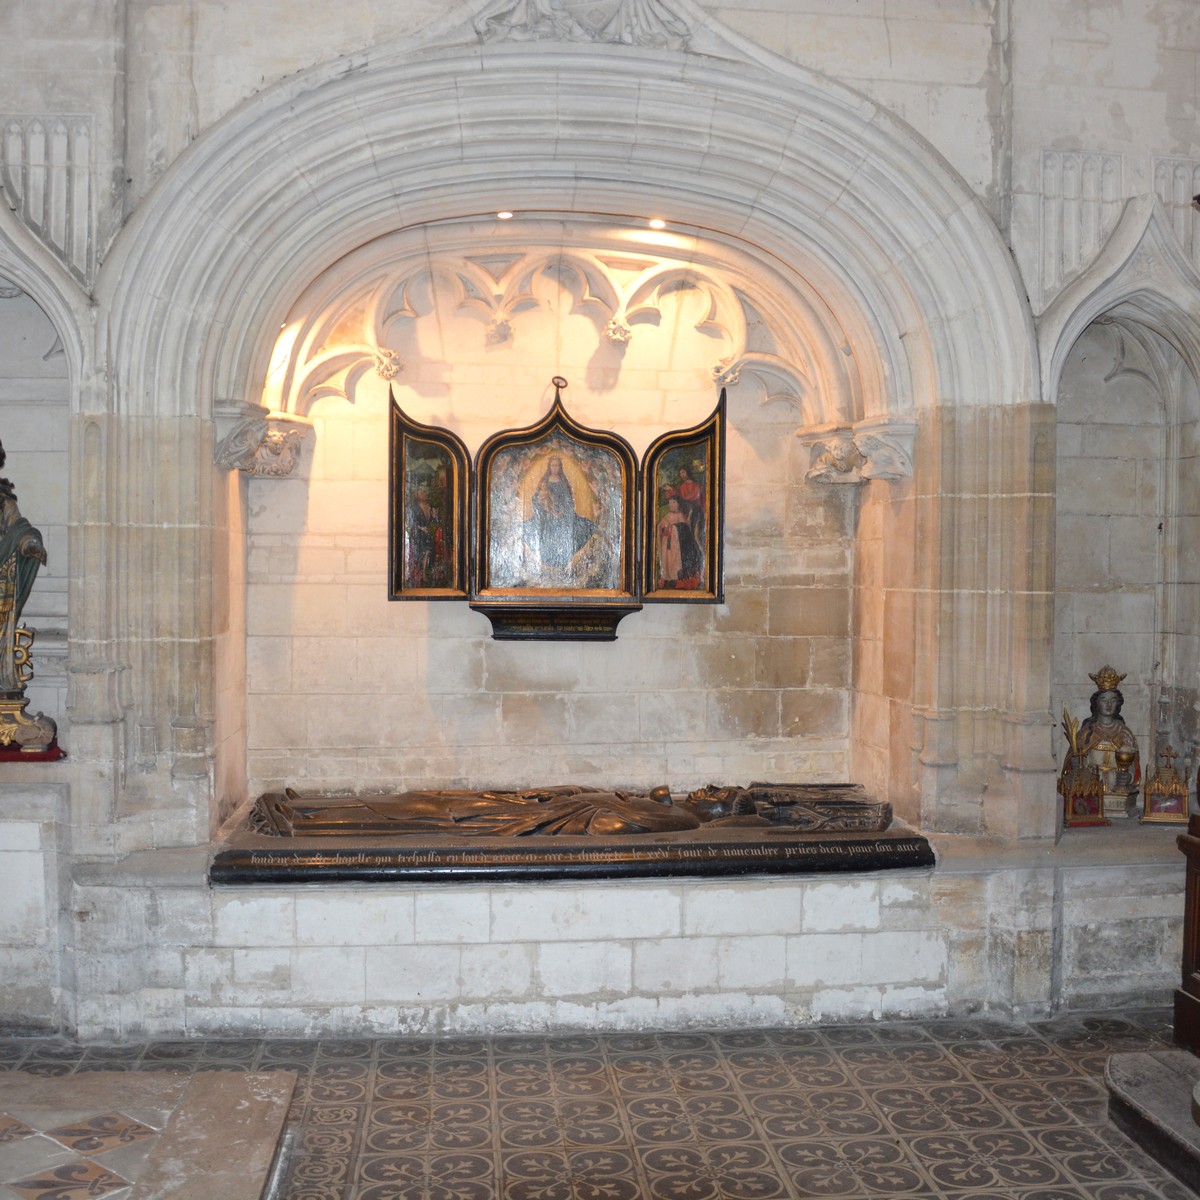 Cathédrale de Saint-Omer  -  Chapelle wissocq  -  TRIPTYQUE DE JEAN THORION vers 1500 – 1520 